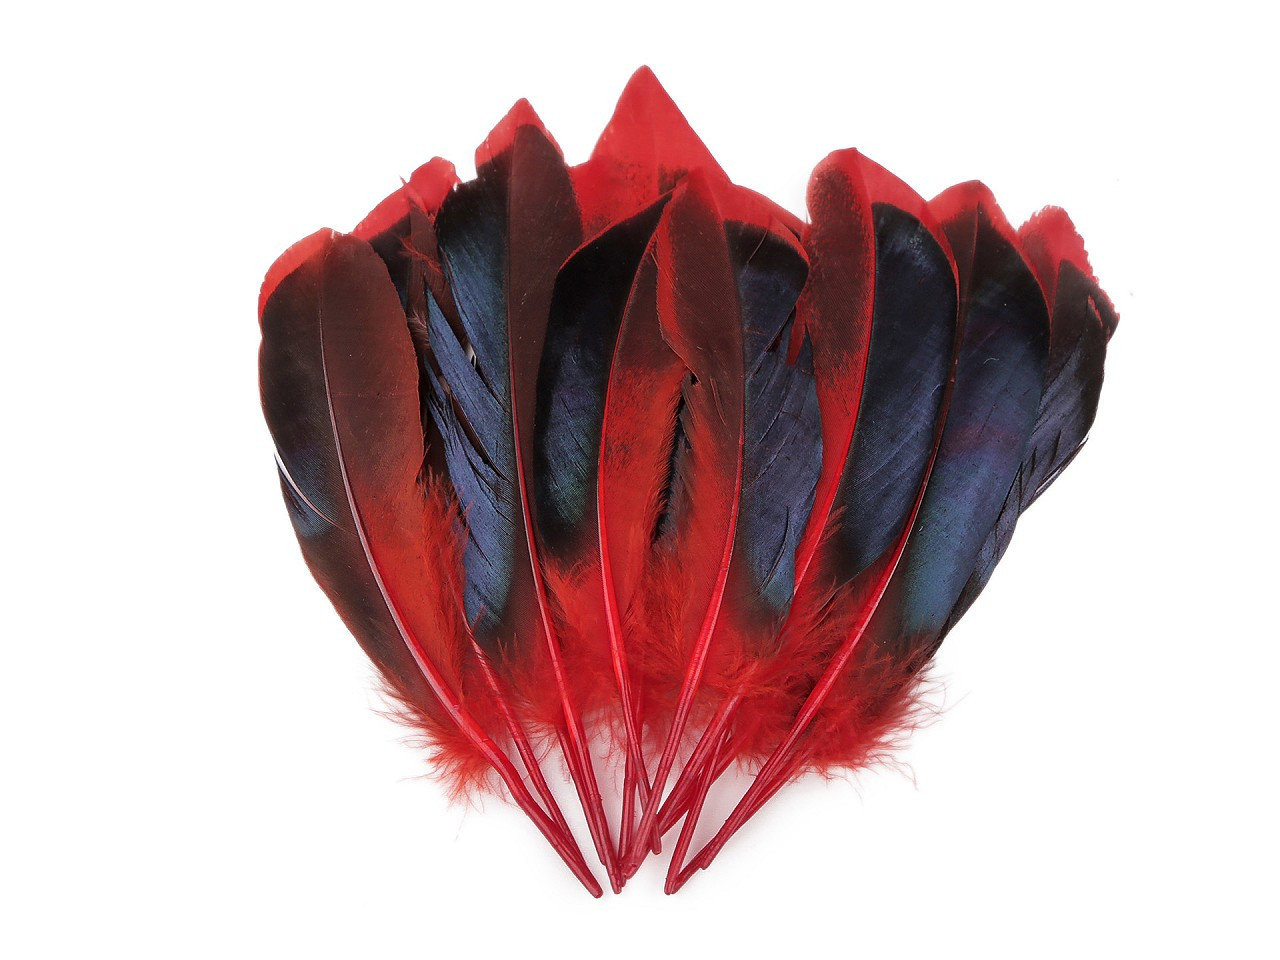 Kachní peří délka 13-15 cm, barva 1 červená